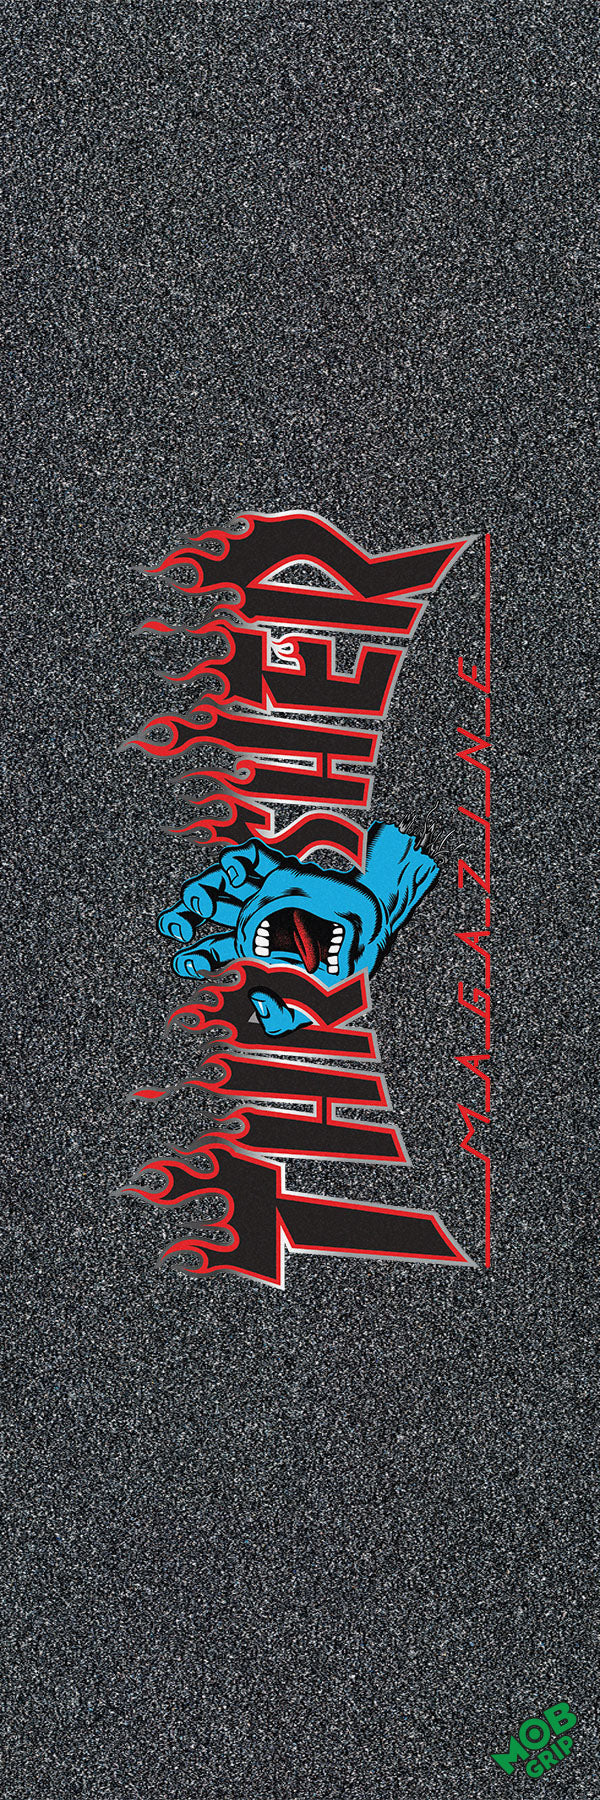 Mob Grip - Lija Thrasher x SC Screaming Flame Logo - Lo Mejor De MOB Grip - Solo Por $11990! Compra Ahora En Wallride Skateshop